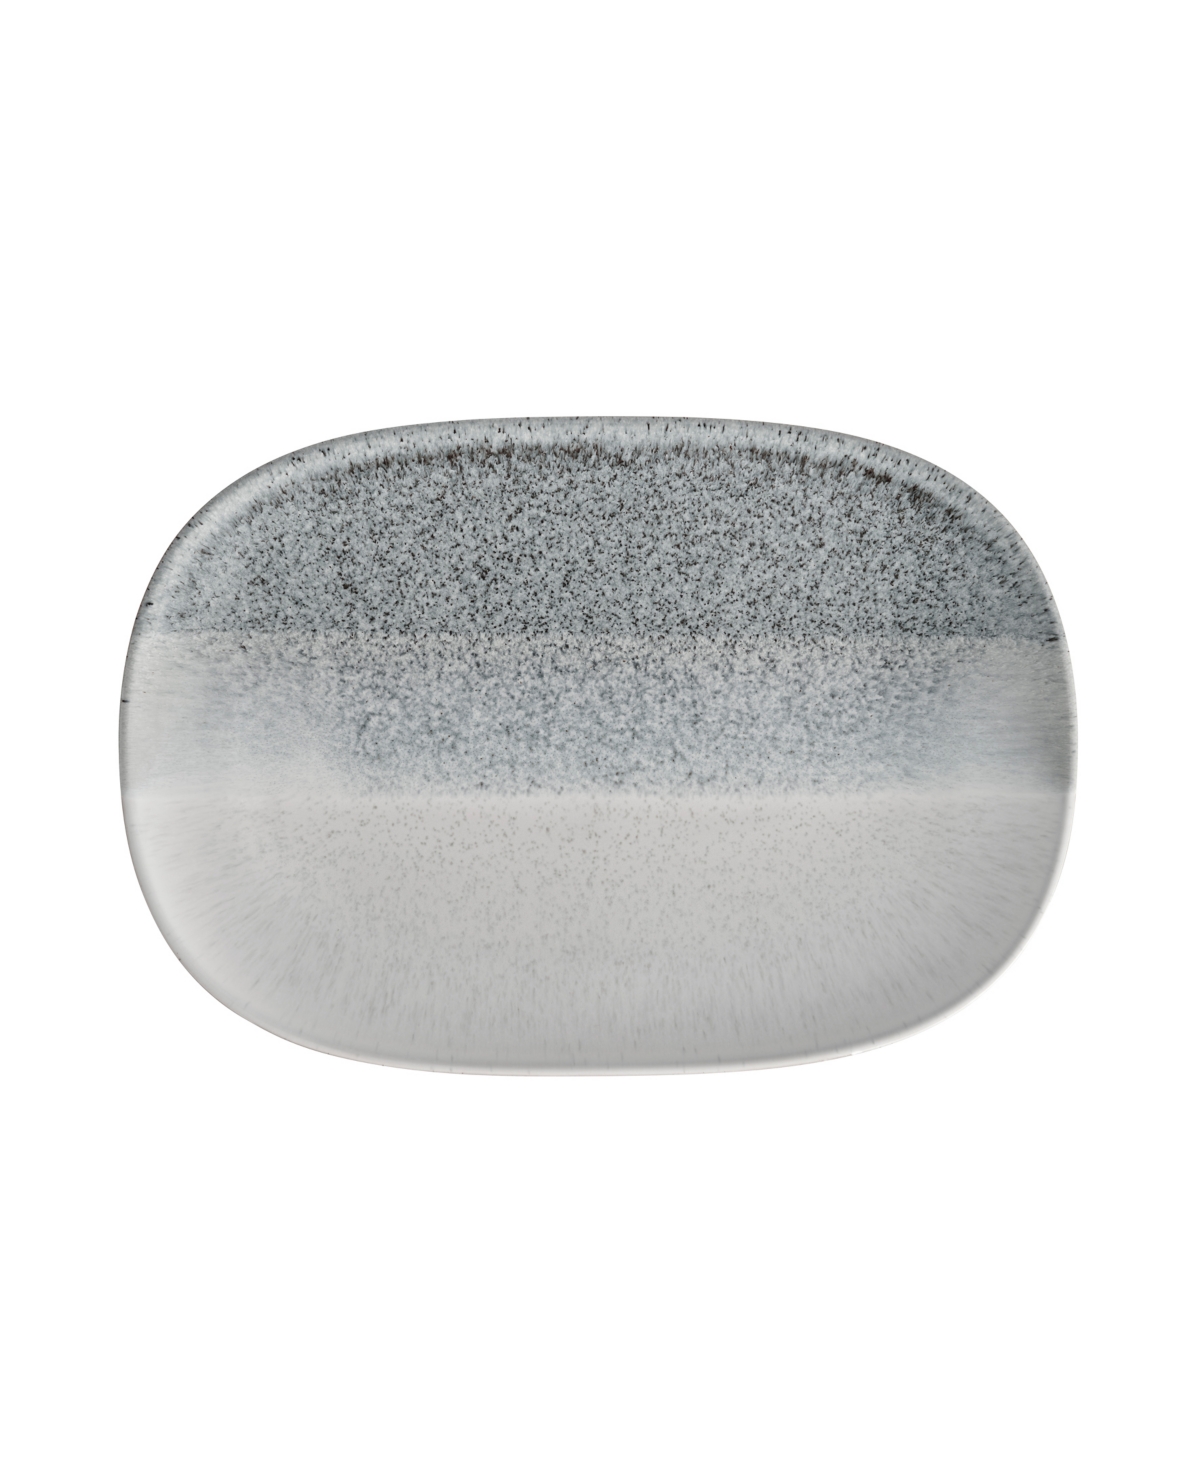 Denby Studio Accent Large Oblong Platter In Light Gray